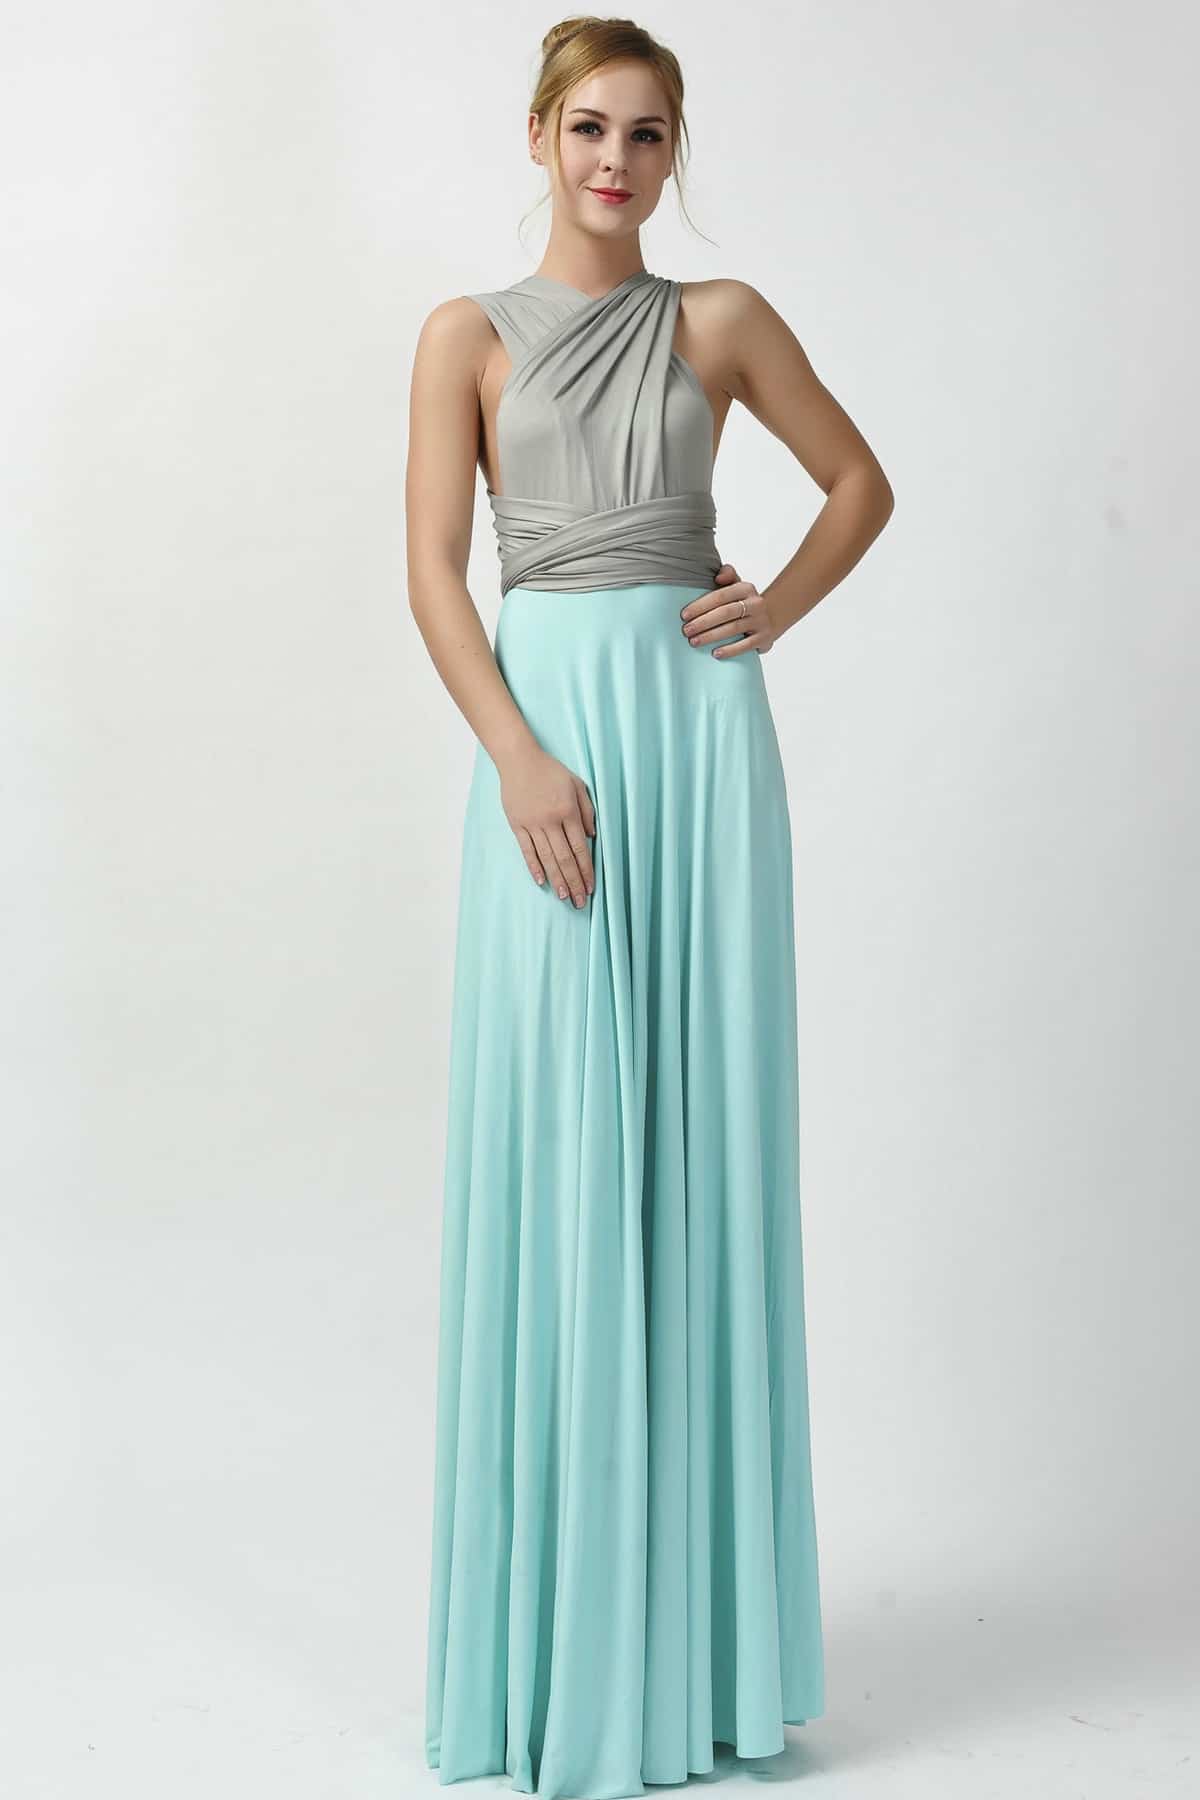 two-toned-maxi-gray-aqua-infinity-bridesmaid-dresses-a